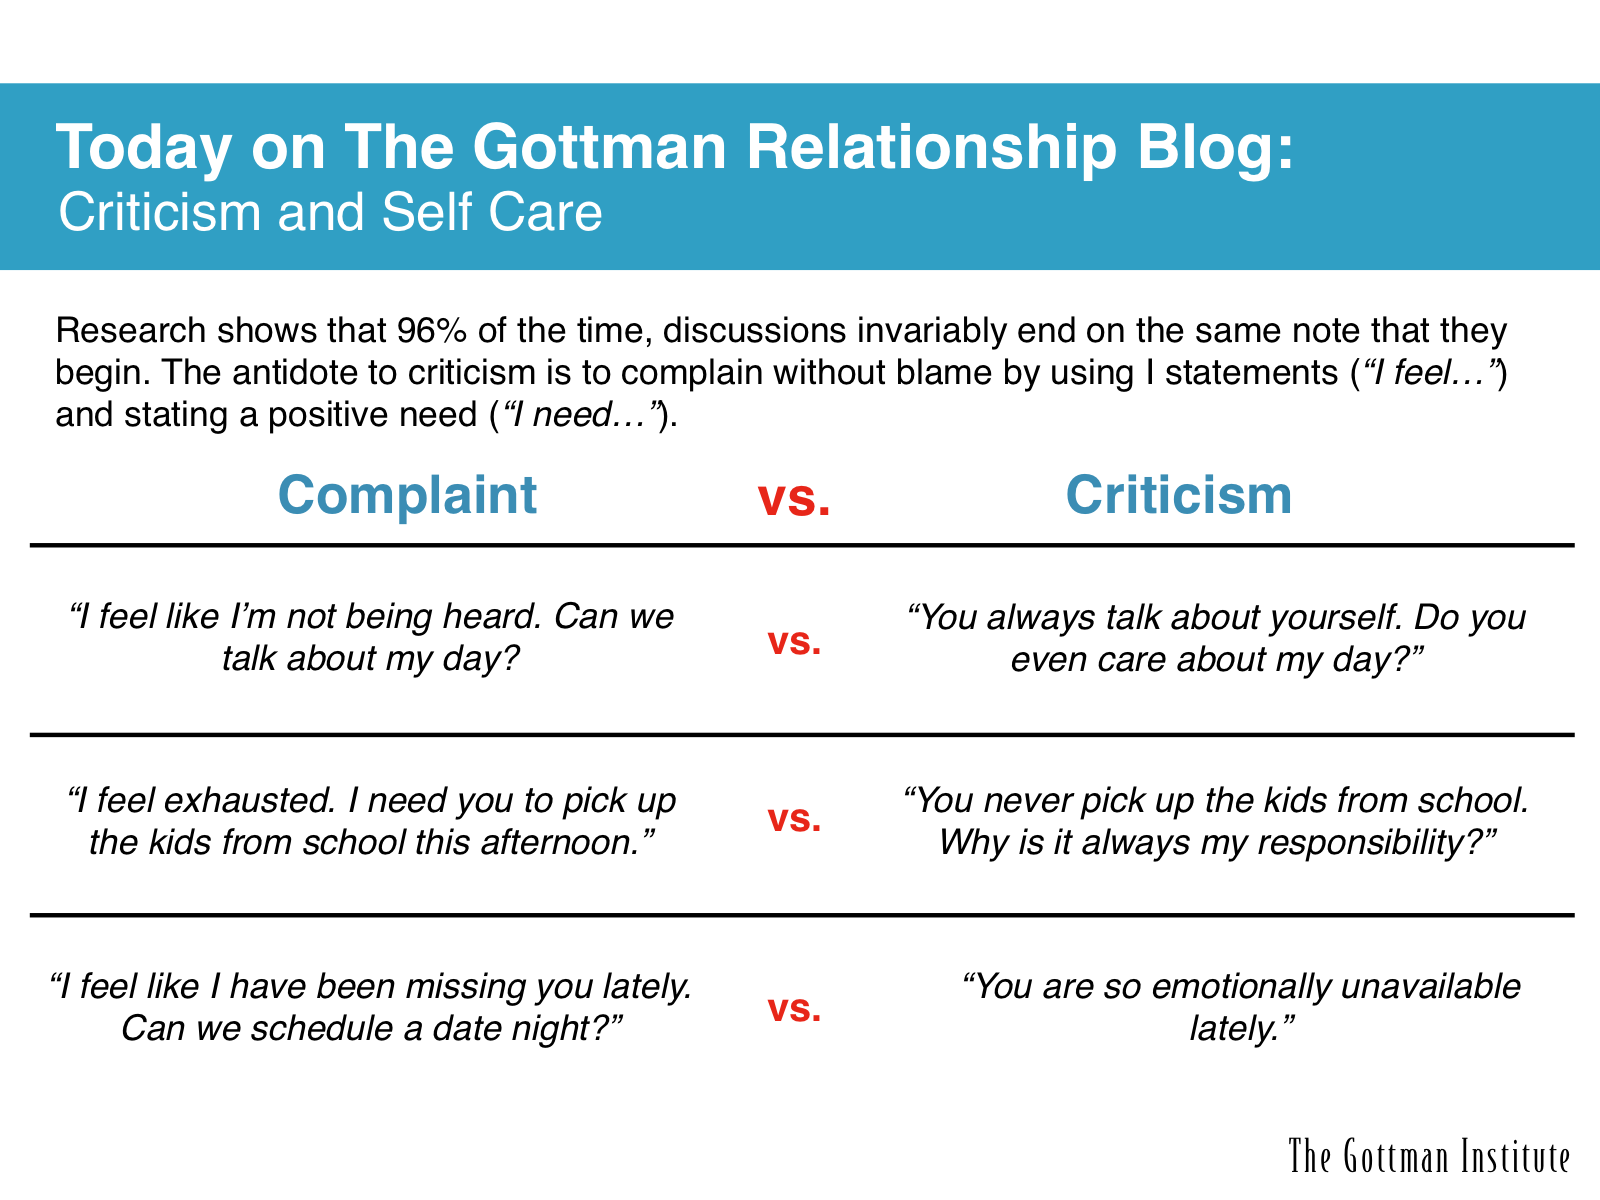 www.GottmanBlog.com